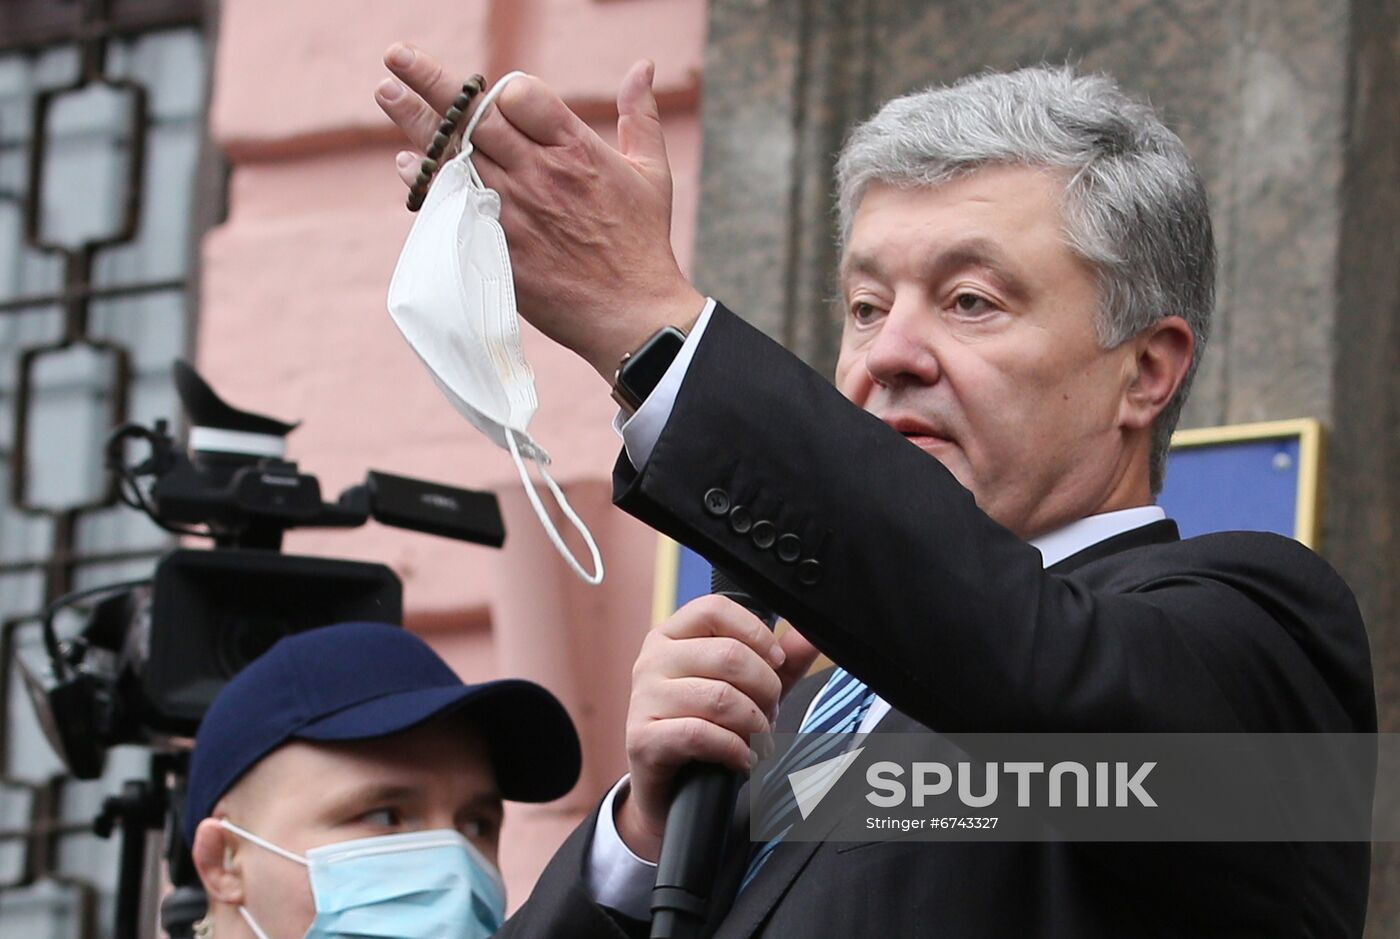 Ukraine Poroshenko Treason Trial 